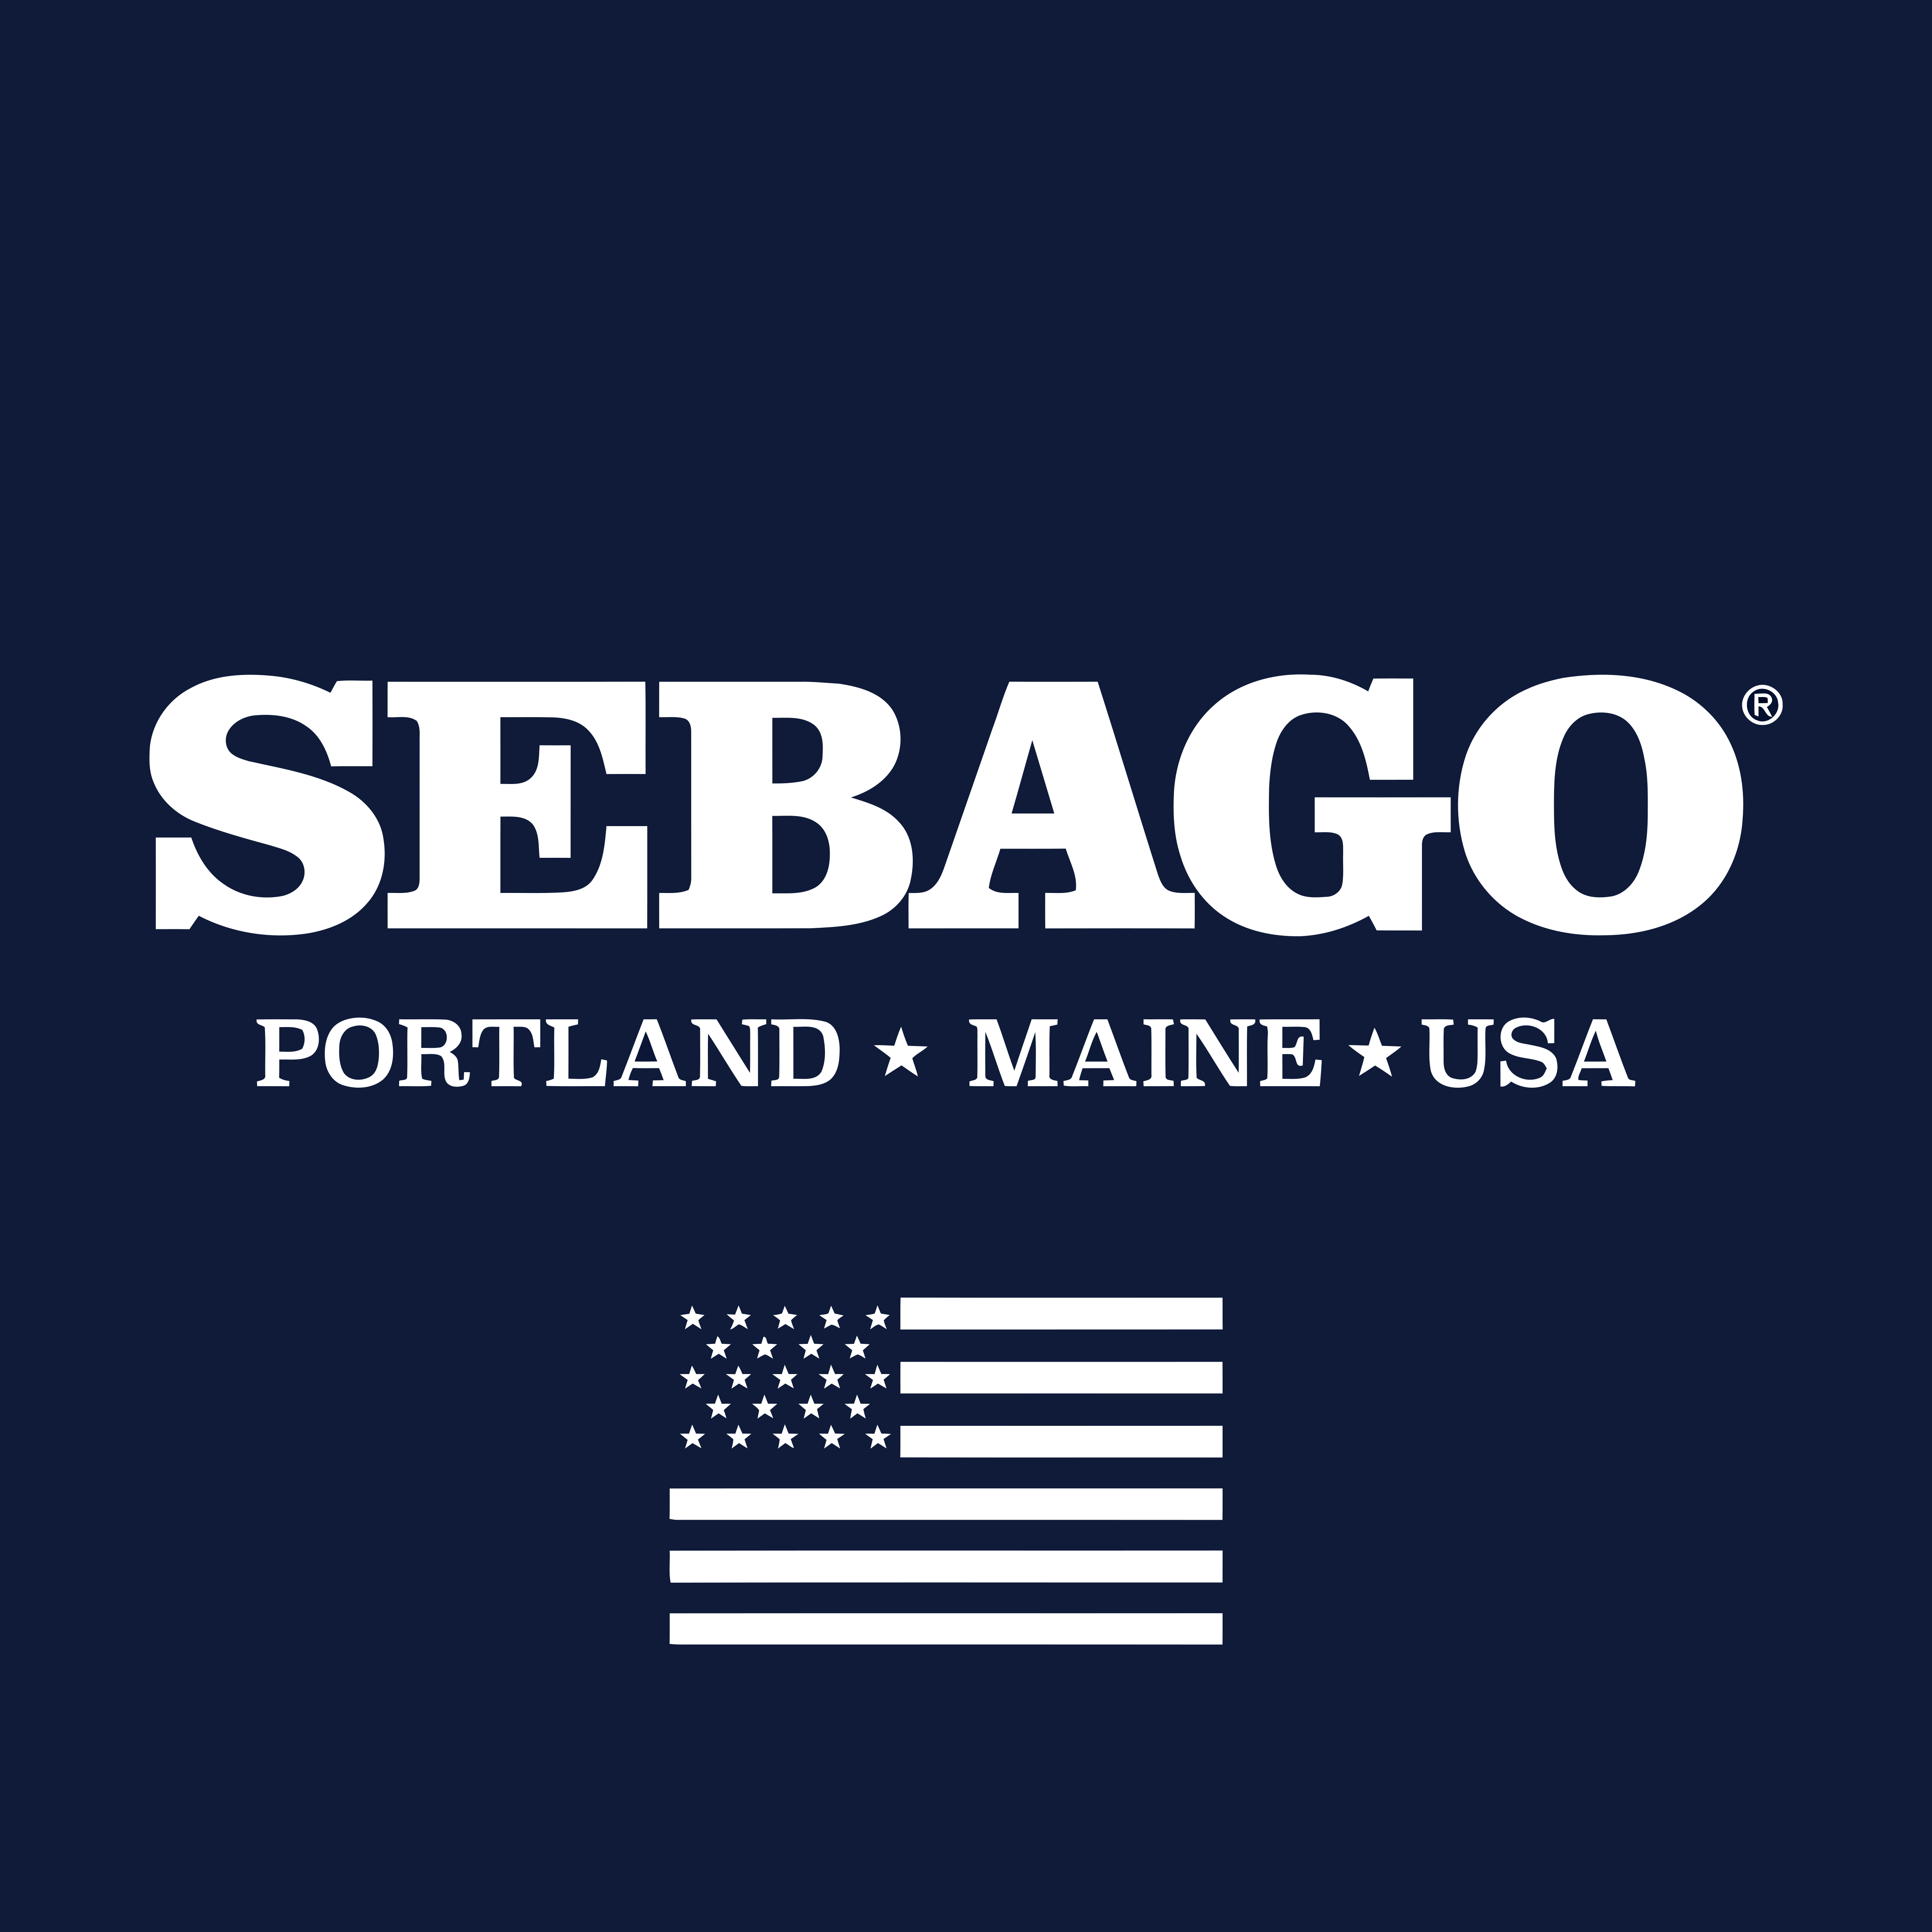 Arthur Conan Doyle Onderscheid groep Sebago – Logos Download